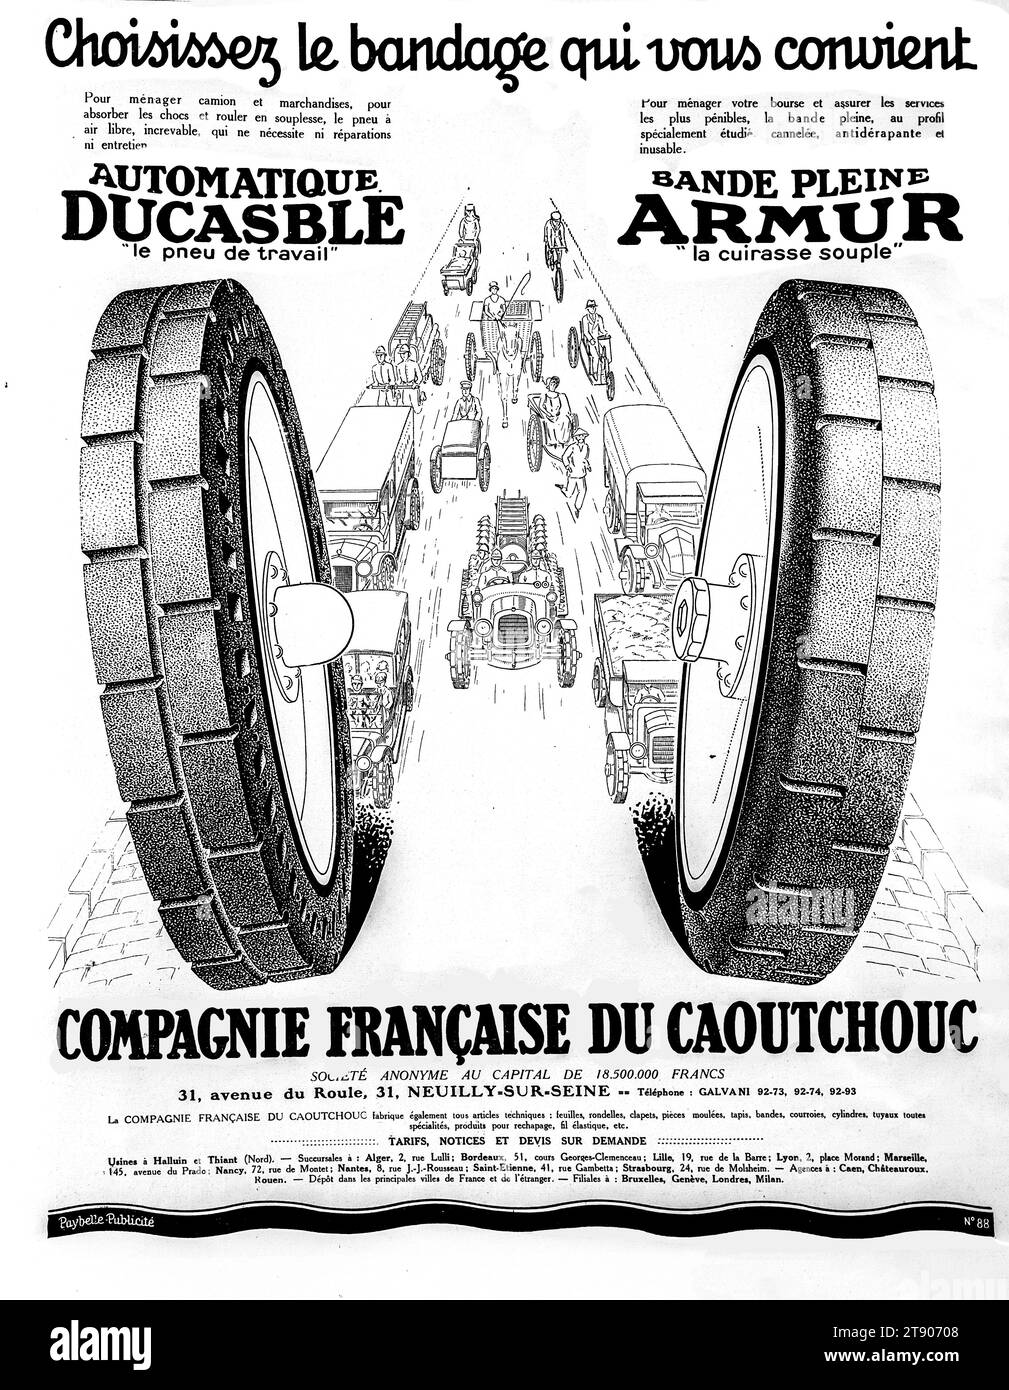 Französische Werbung für Ducasble- und Armur-Reifen Anfang des 20. Jahrhunderts, die langlebige Reifen enthielt. Stockfoto